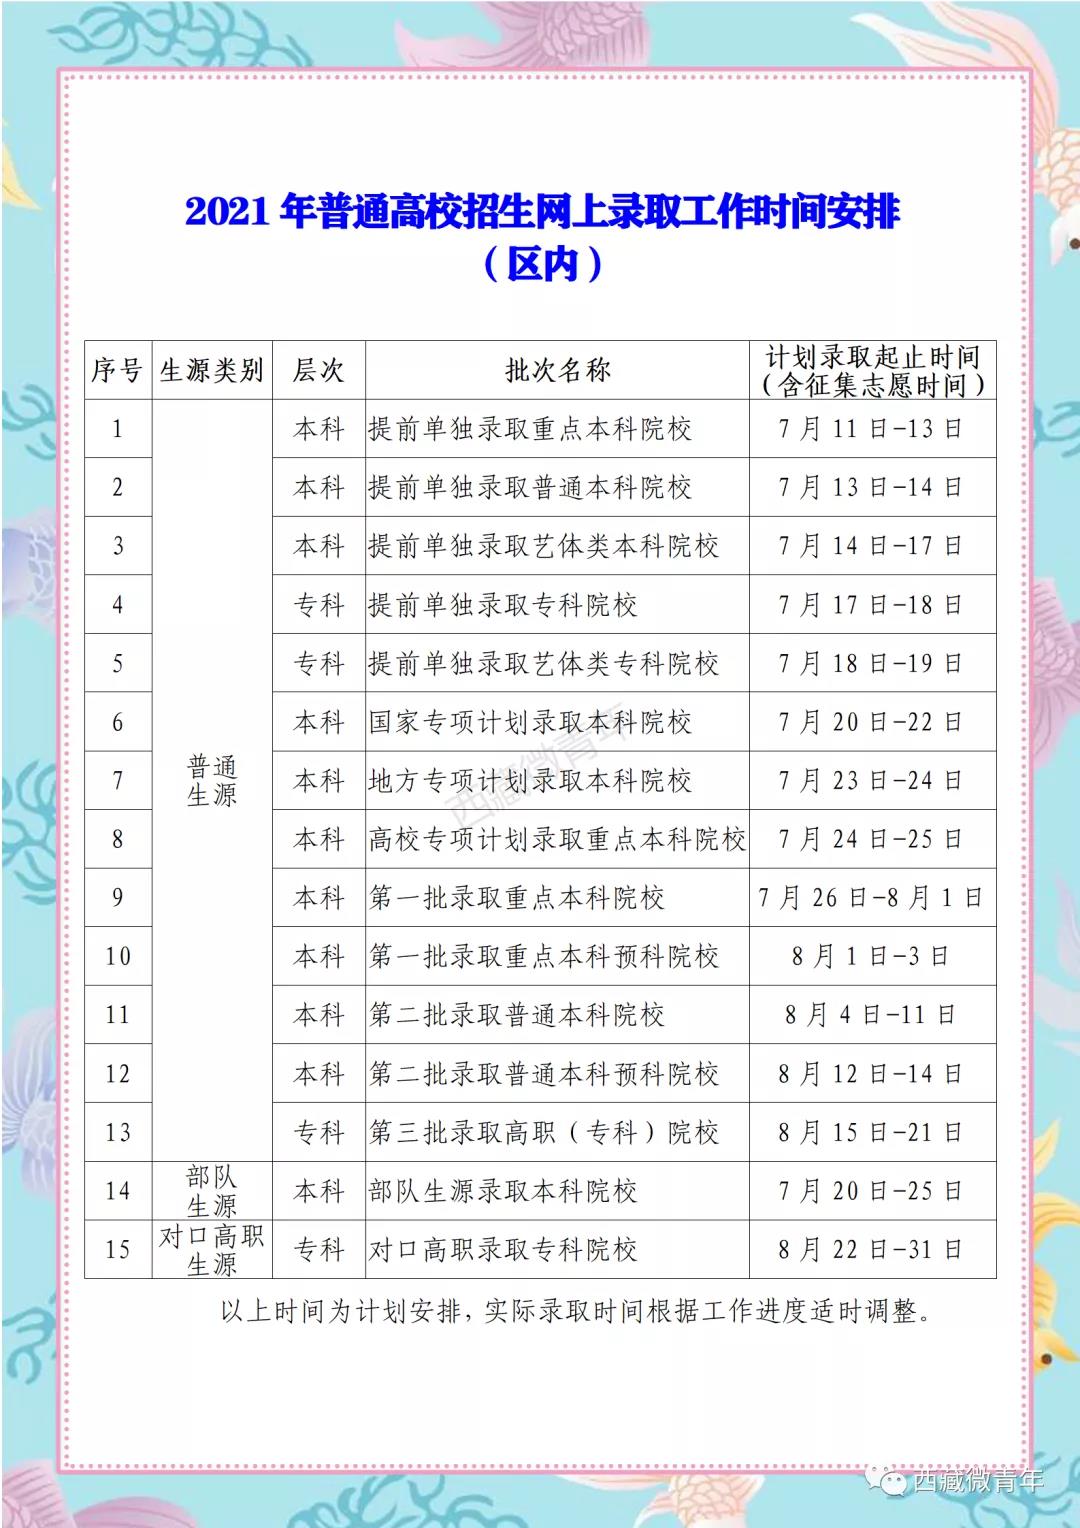 2021西藏高考各批次录取时间